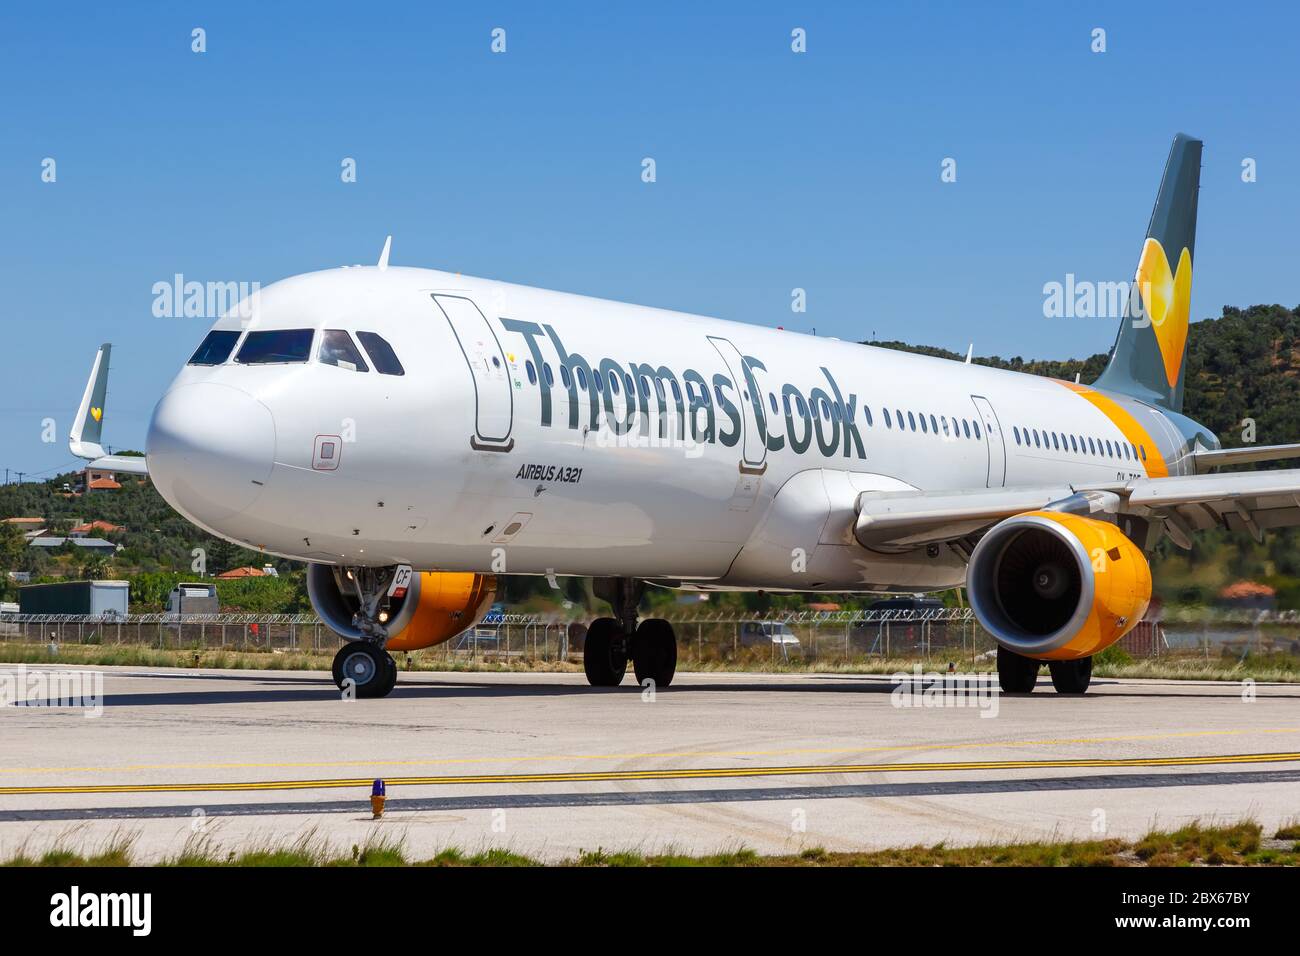 Skiathos, Griechenland - 30. Juli 2019: Thomas Cook Airlines Scandinavia Airbus A321 Flugzeug am Skiathos Flughafen (JSI) in Griechenland. Airbus ist eine europäische airc Stockfoto